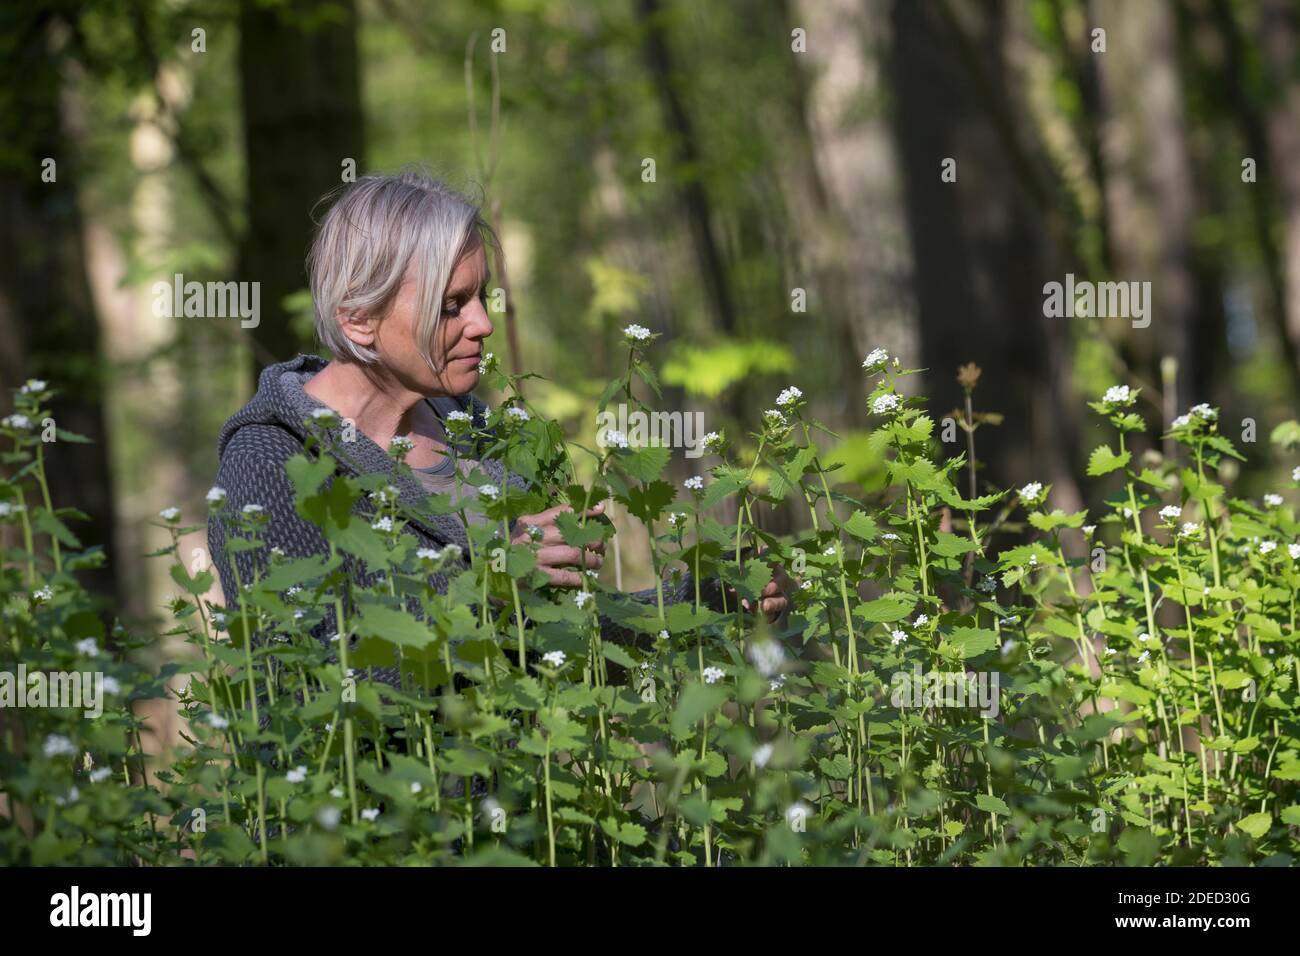 Knoblauchsenf, Heckenbarlic, Jack-by-the-Hedge (Alliaria petiolata), Frau, die Knoblauchsenf im Wald erntet, Deutschland Stockfoto